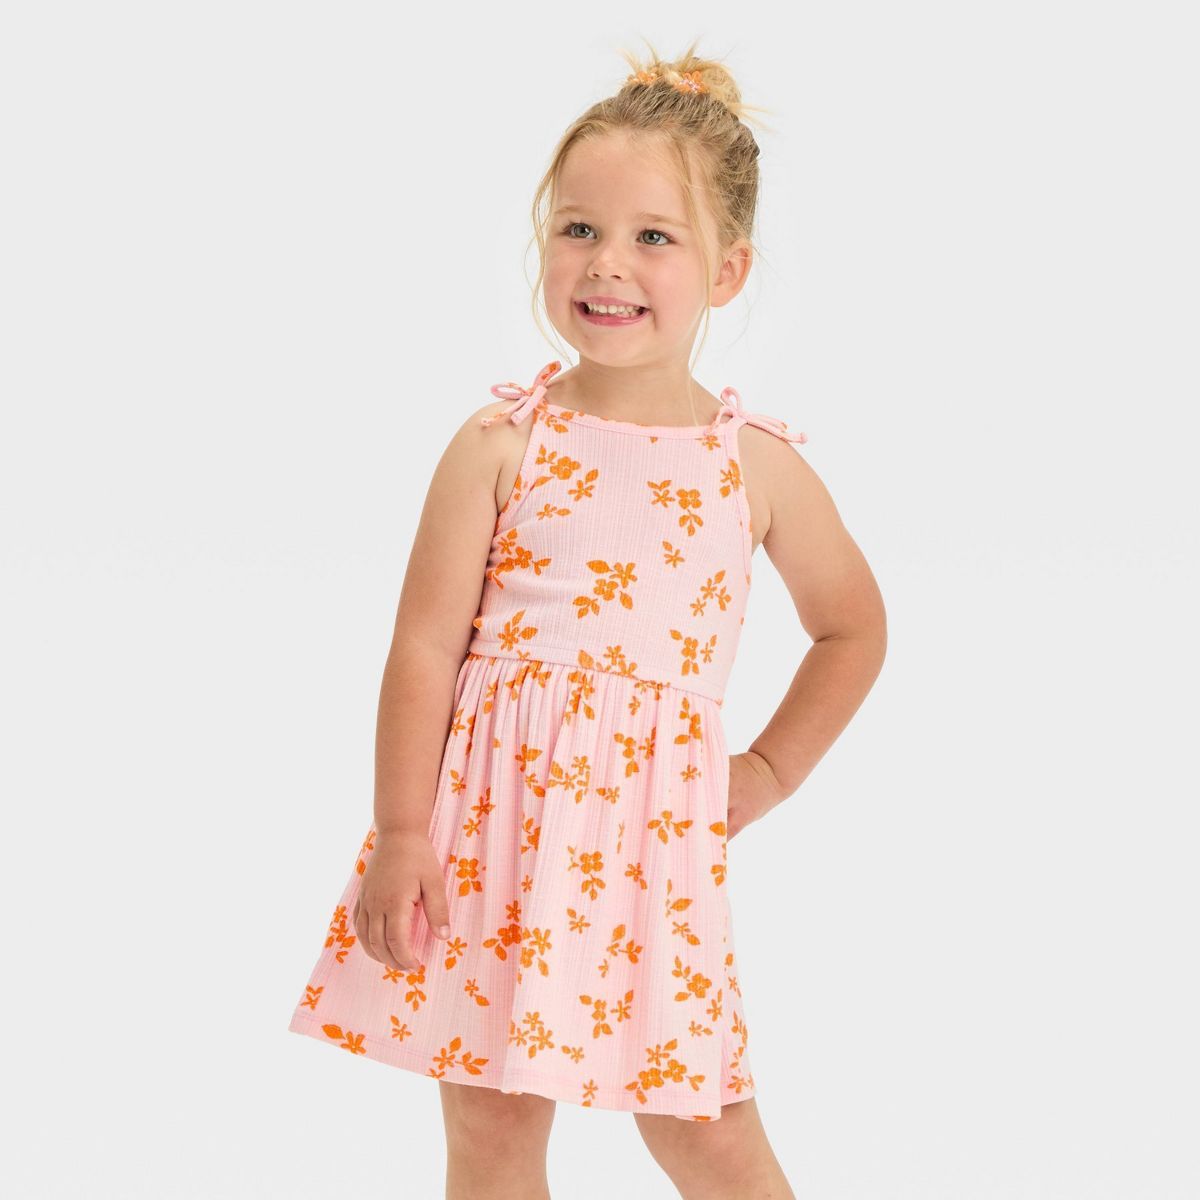 Toddler Girls' Floral Dress - Cat & Jack™ Light Pink | Target